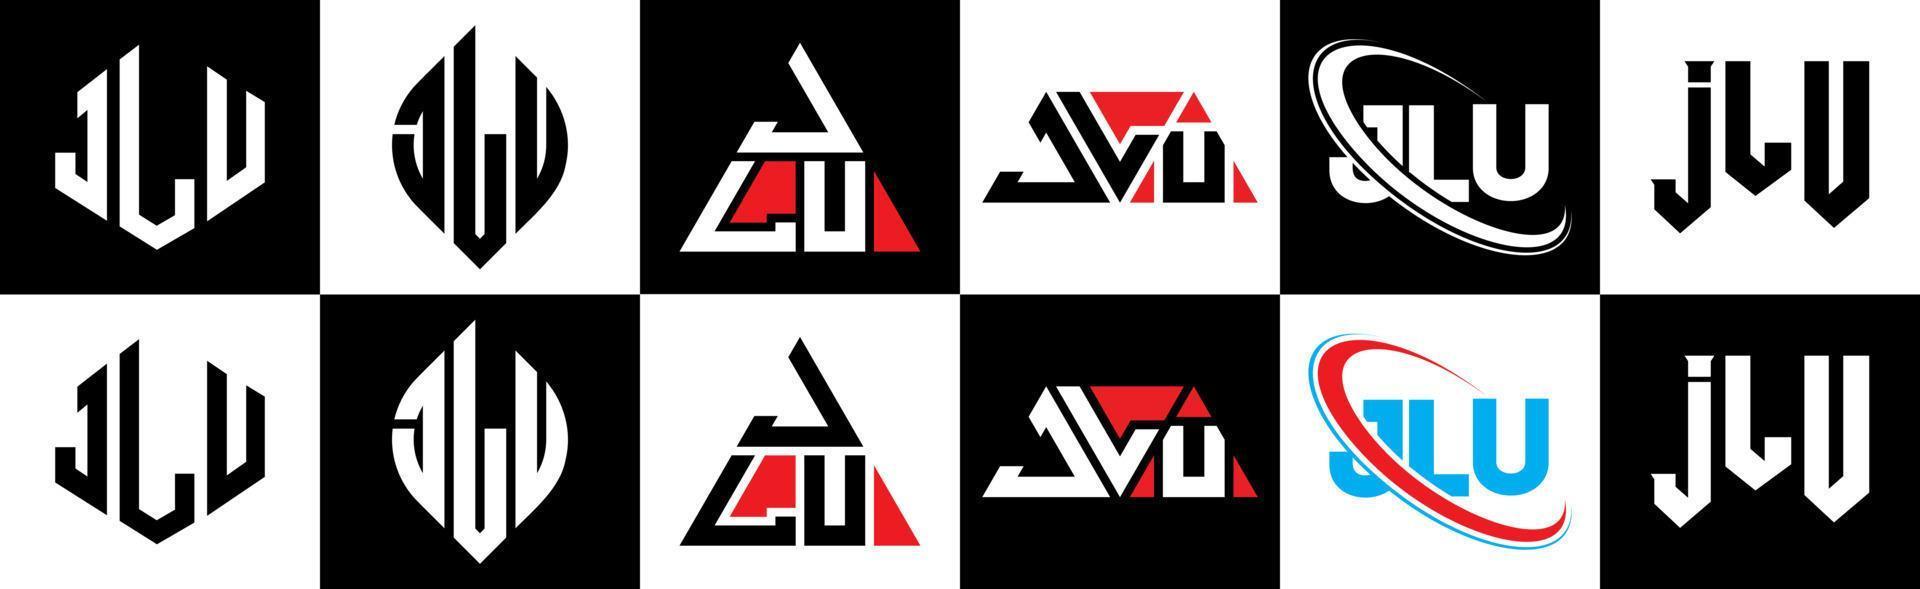 jlu brief logo ontwerp in zes stijl. jlu veelhoek, cirkel, driehoek, zeshoek, vlak en gemakkelijk stijl met zwart en wit kleur variatie brief logo reeks in een tekengebied. jlu minimalistische en klassiek logo vector